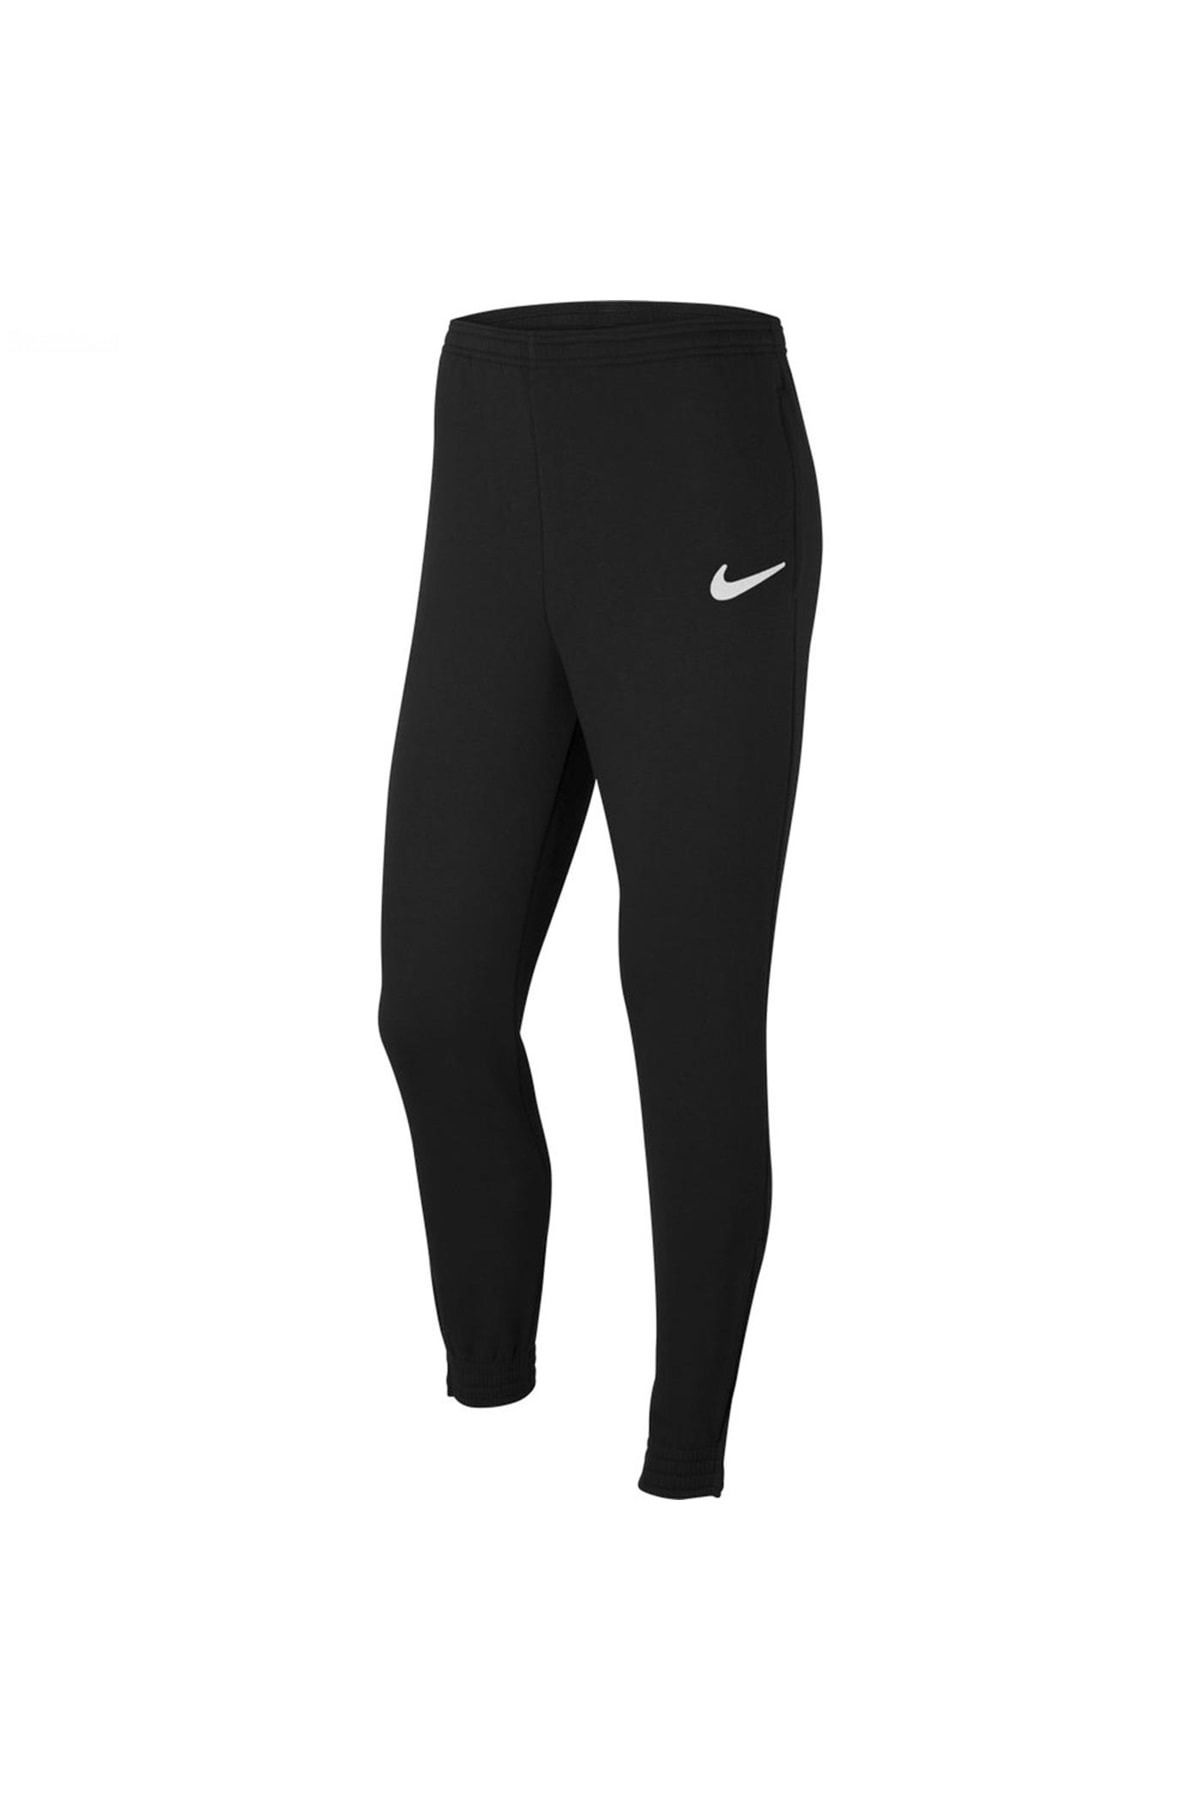 Pantalones Hombre Nike Park 20 algodón - CW6907-063 - gris – depor8